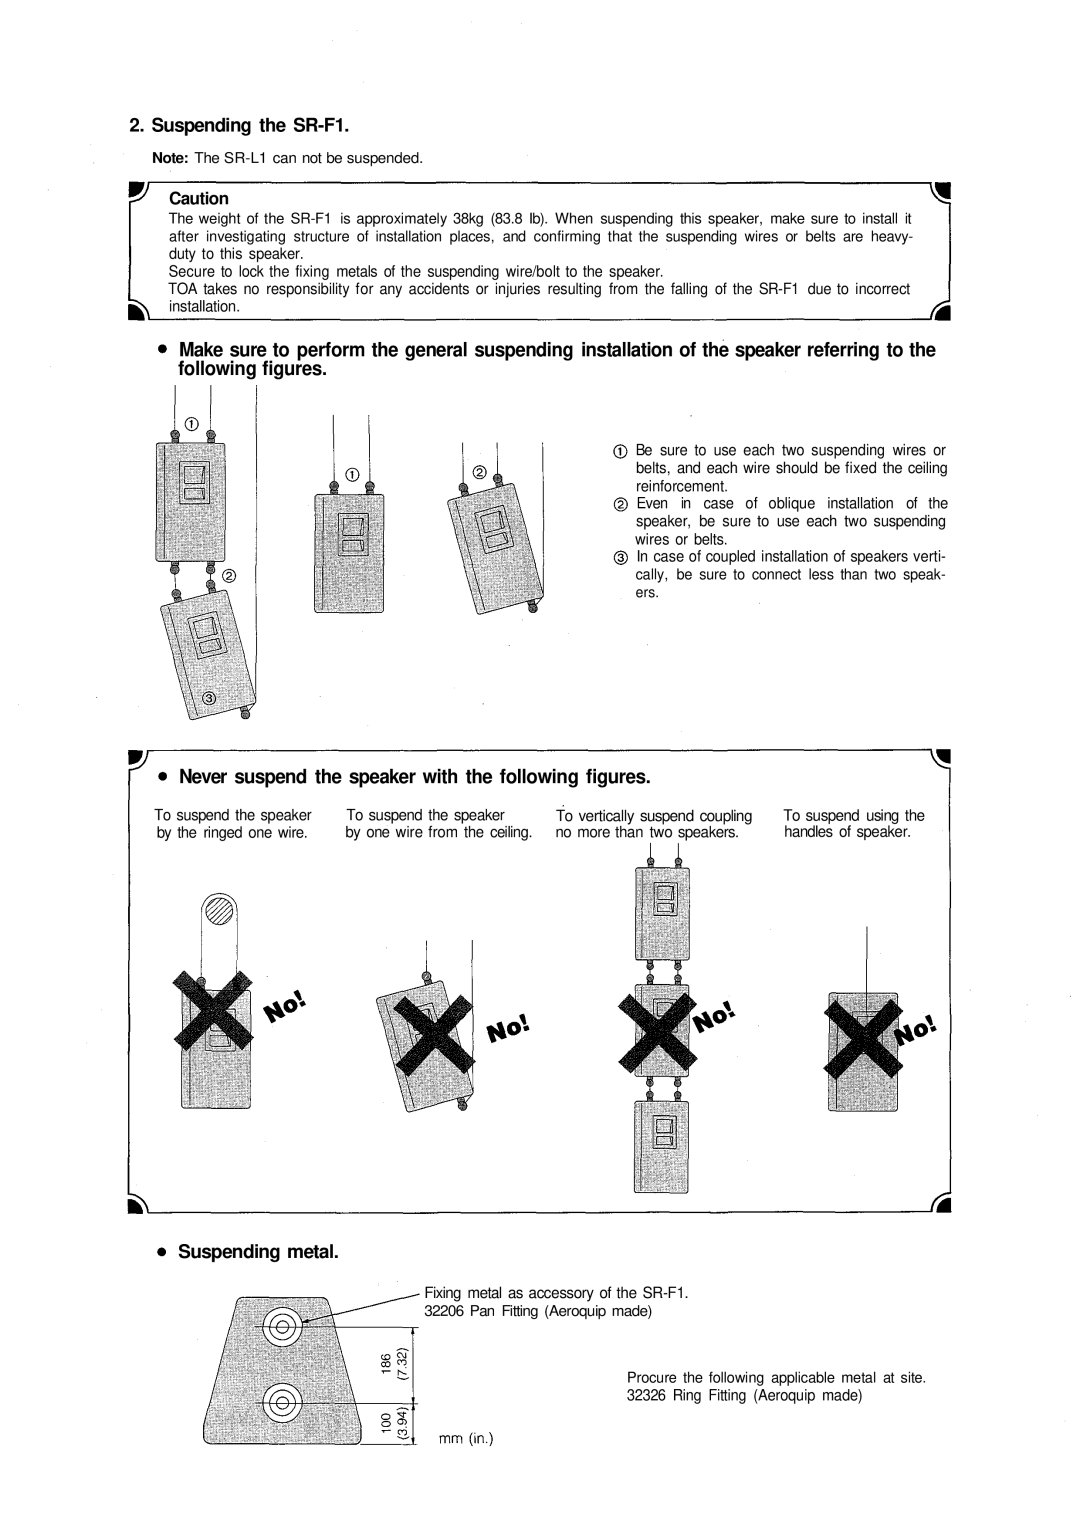 Vizio manual Suspending the SR-F1, Suspending metal 